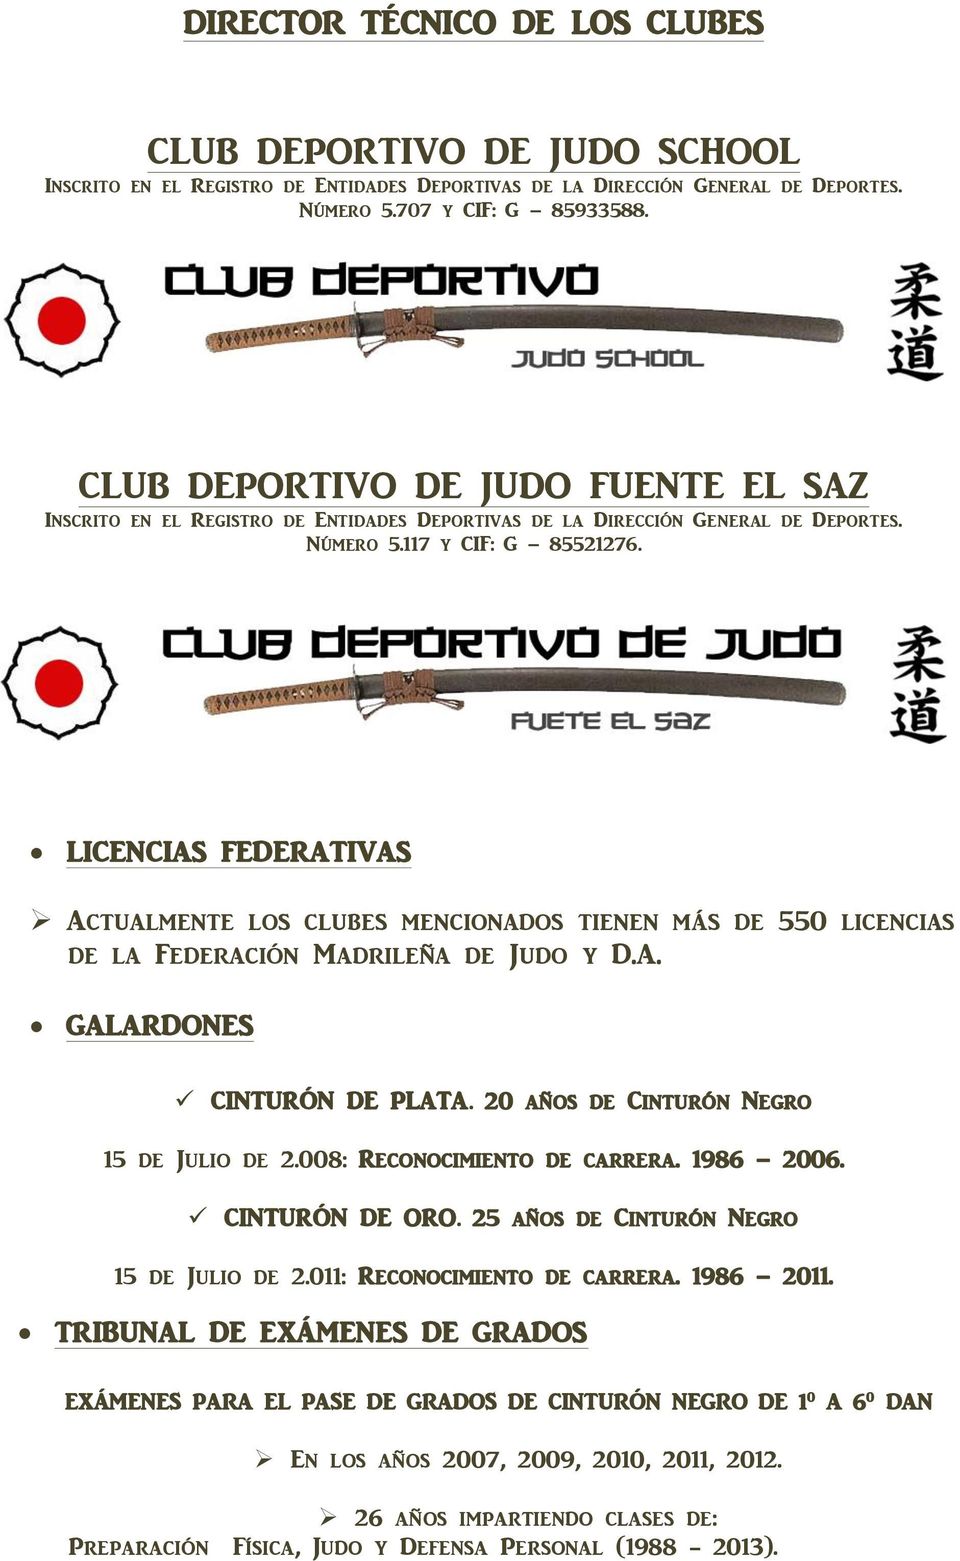 LICENCIAS FEDERATIVAS Actualmente los clubes mencionados tienen más de 550 licencias de la Federación Madrileña de Judo y D.A. GALARDONES CINTURÓN DE PLATA. 20 años de Cinturón Negro 15 de Julio de 2.